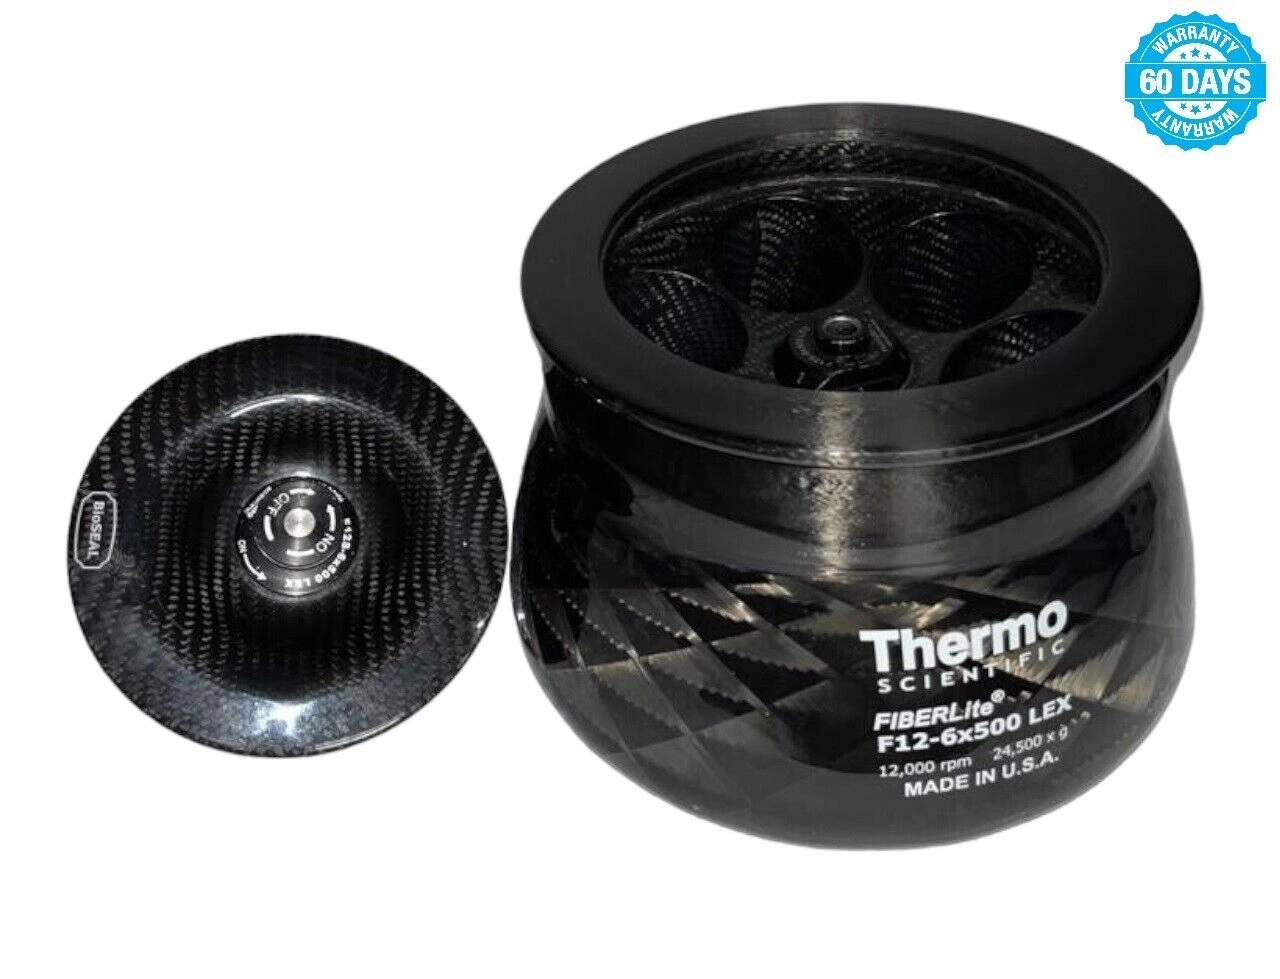 Thermo Scientific Fiberlite F12-6X500 Lex Fixed An